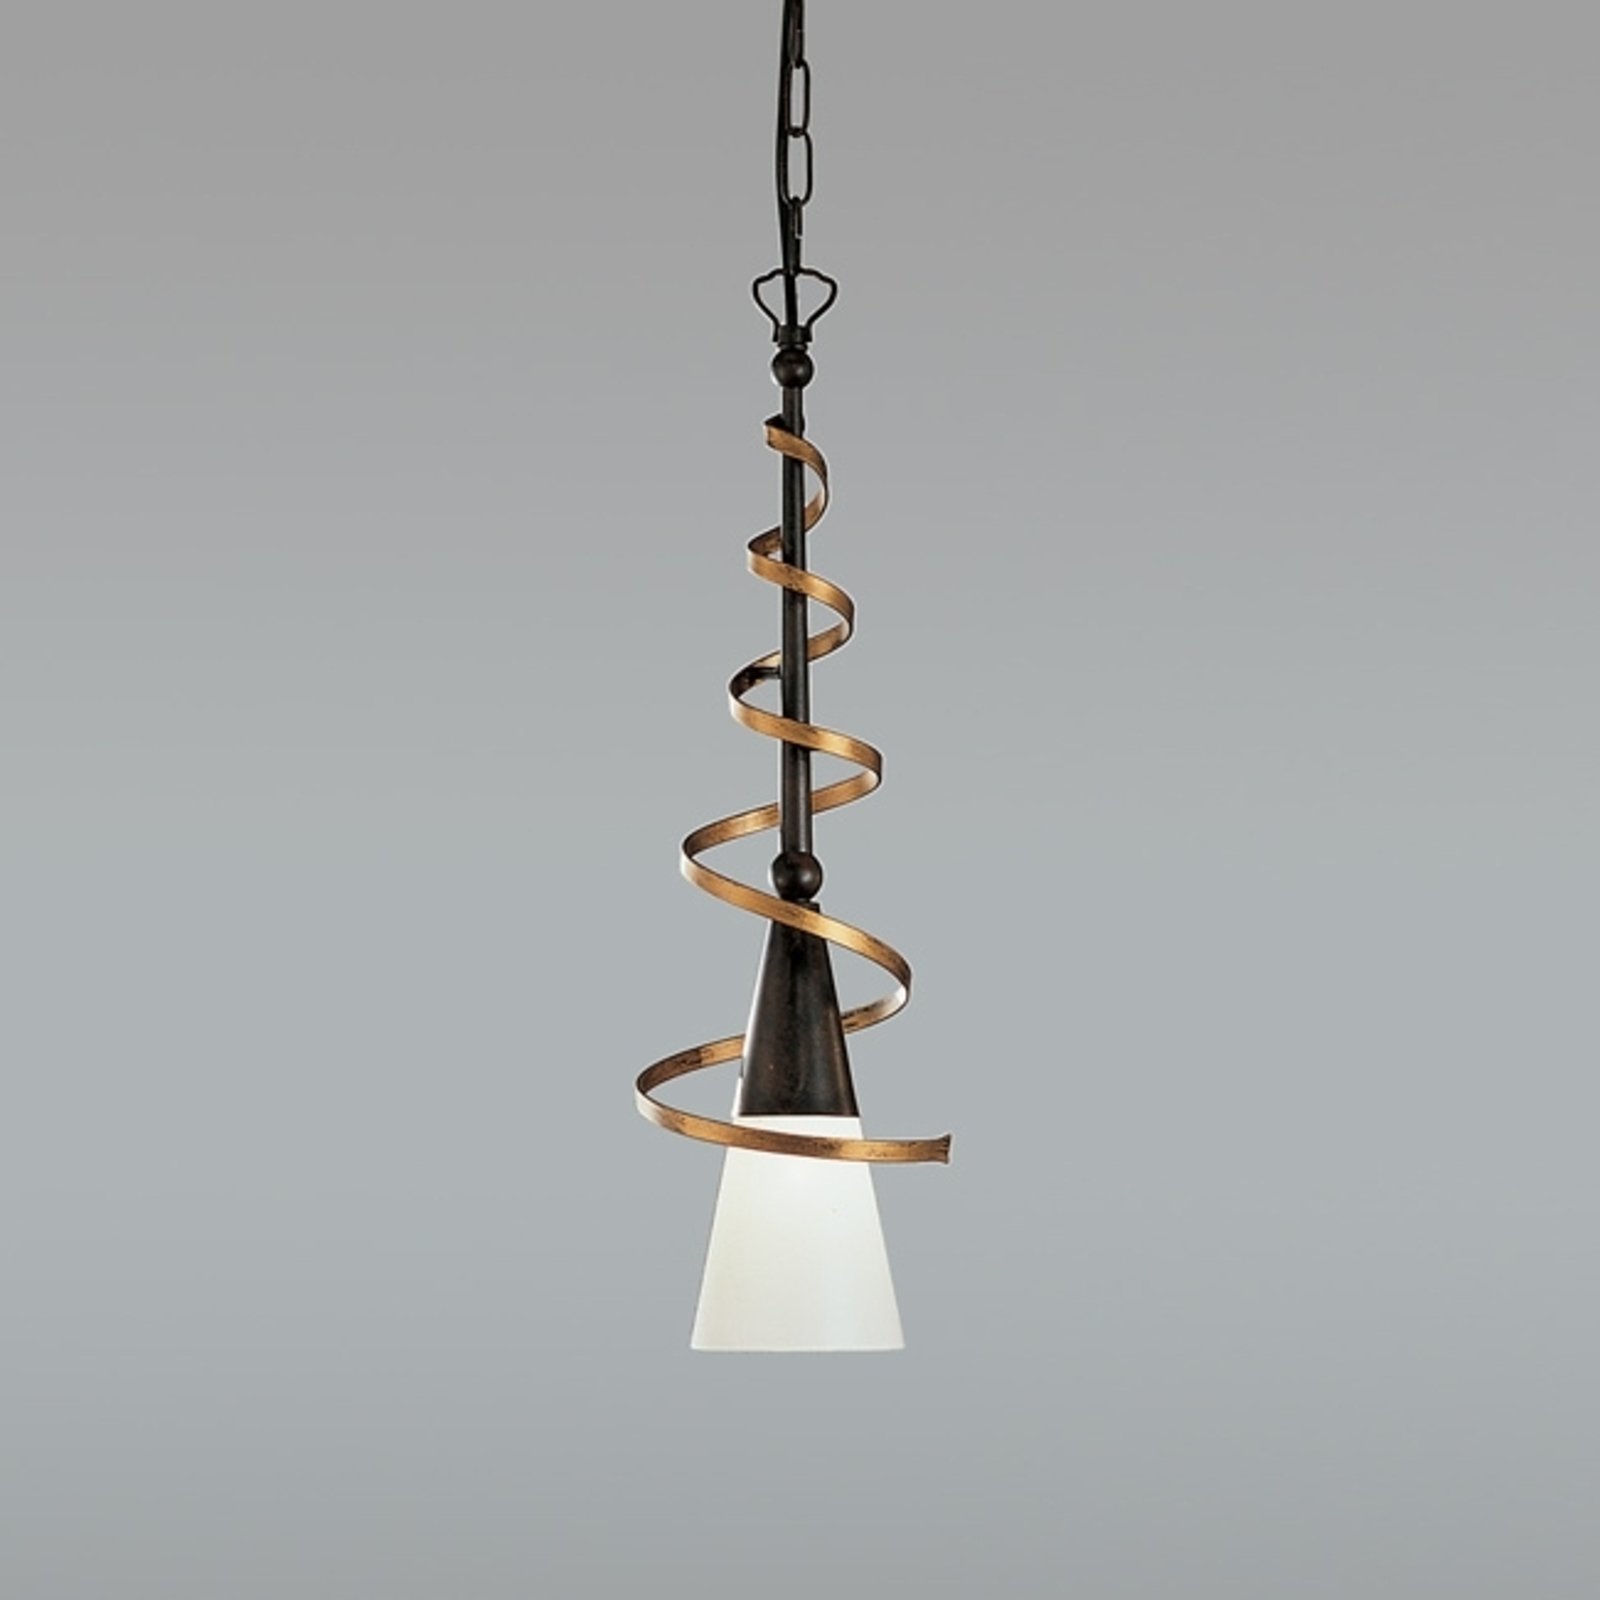 Lampa wisząca BONITO, rdzawy antyk, 50 cm